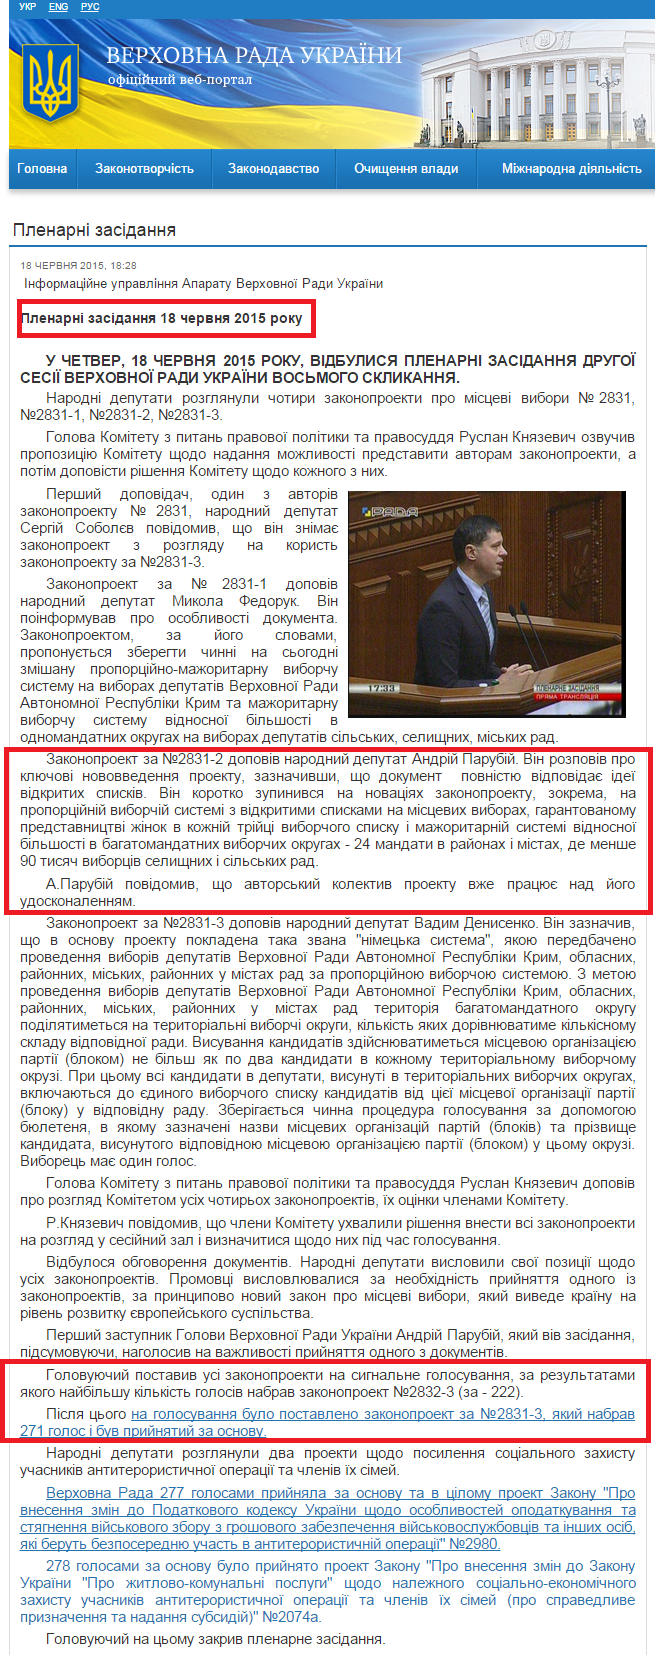 http://iportal.rada.gov.ua/news/Novyny/Plenarni_zasidannya/111920.html